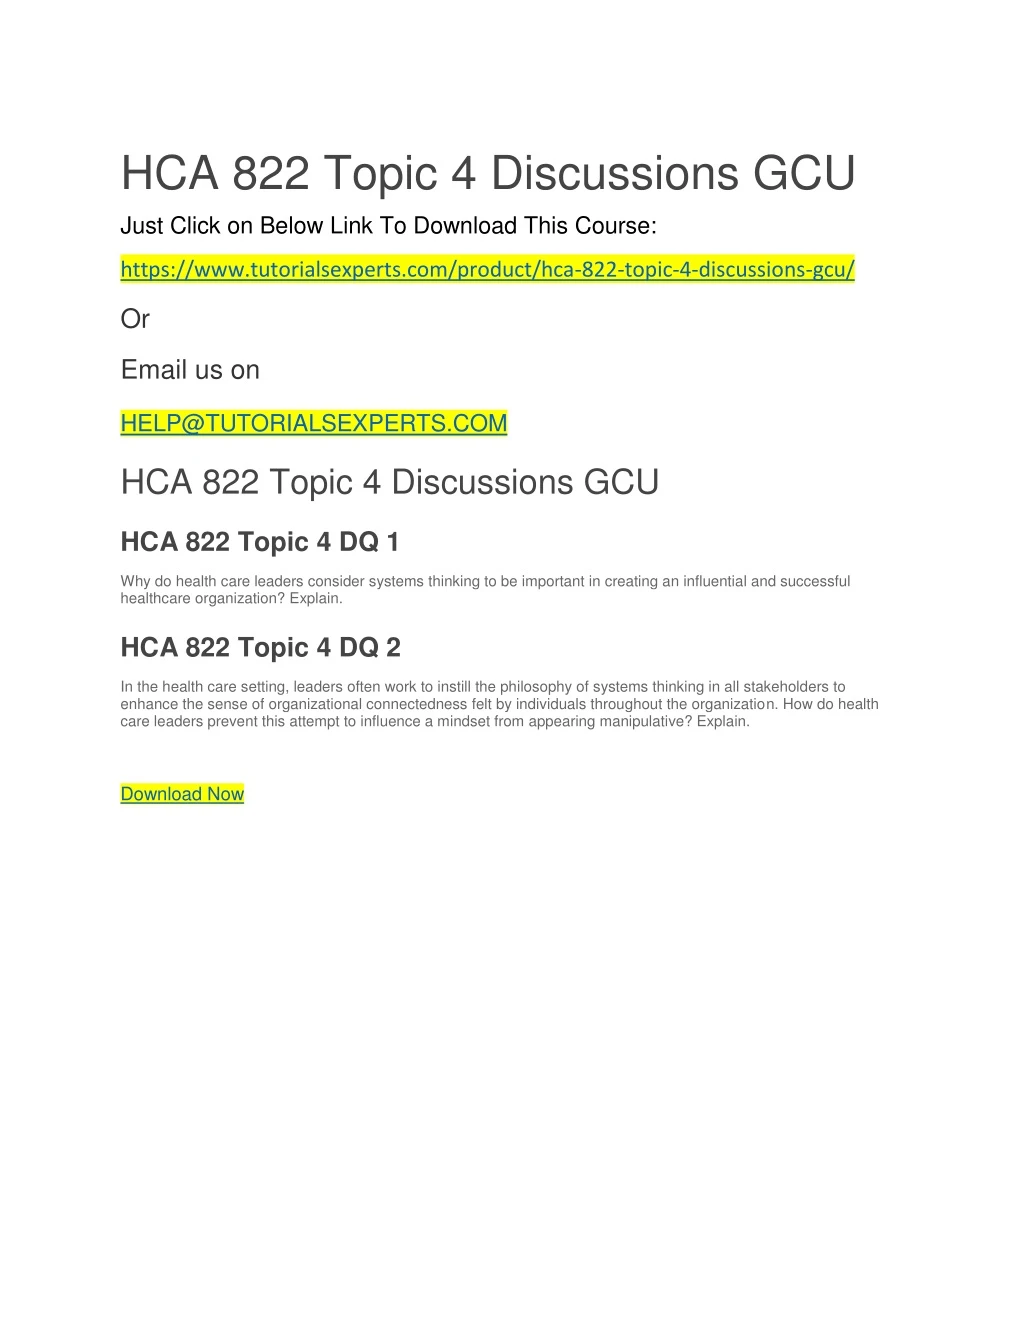 hca 822 topic 4 discussions gcu just click